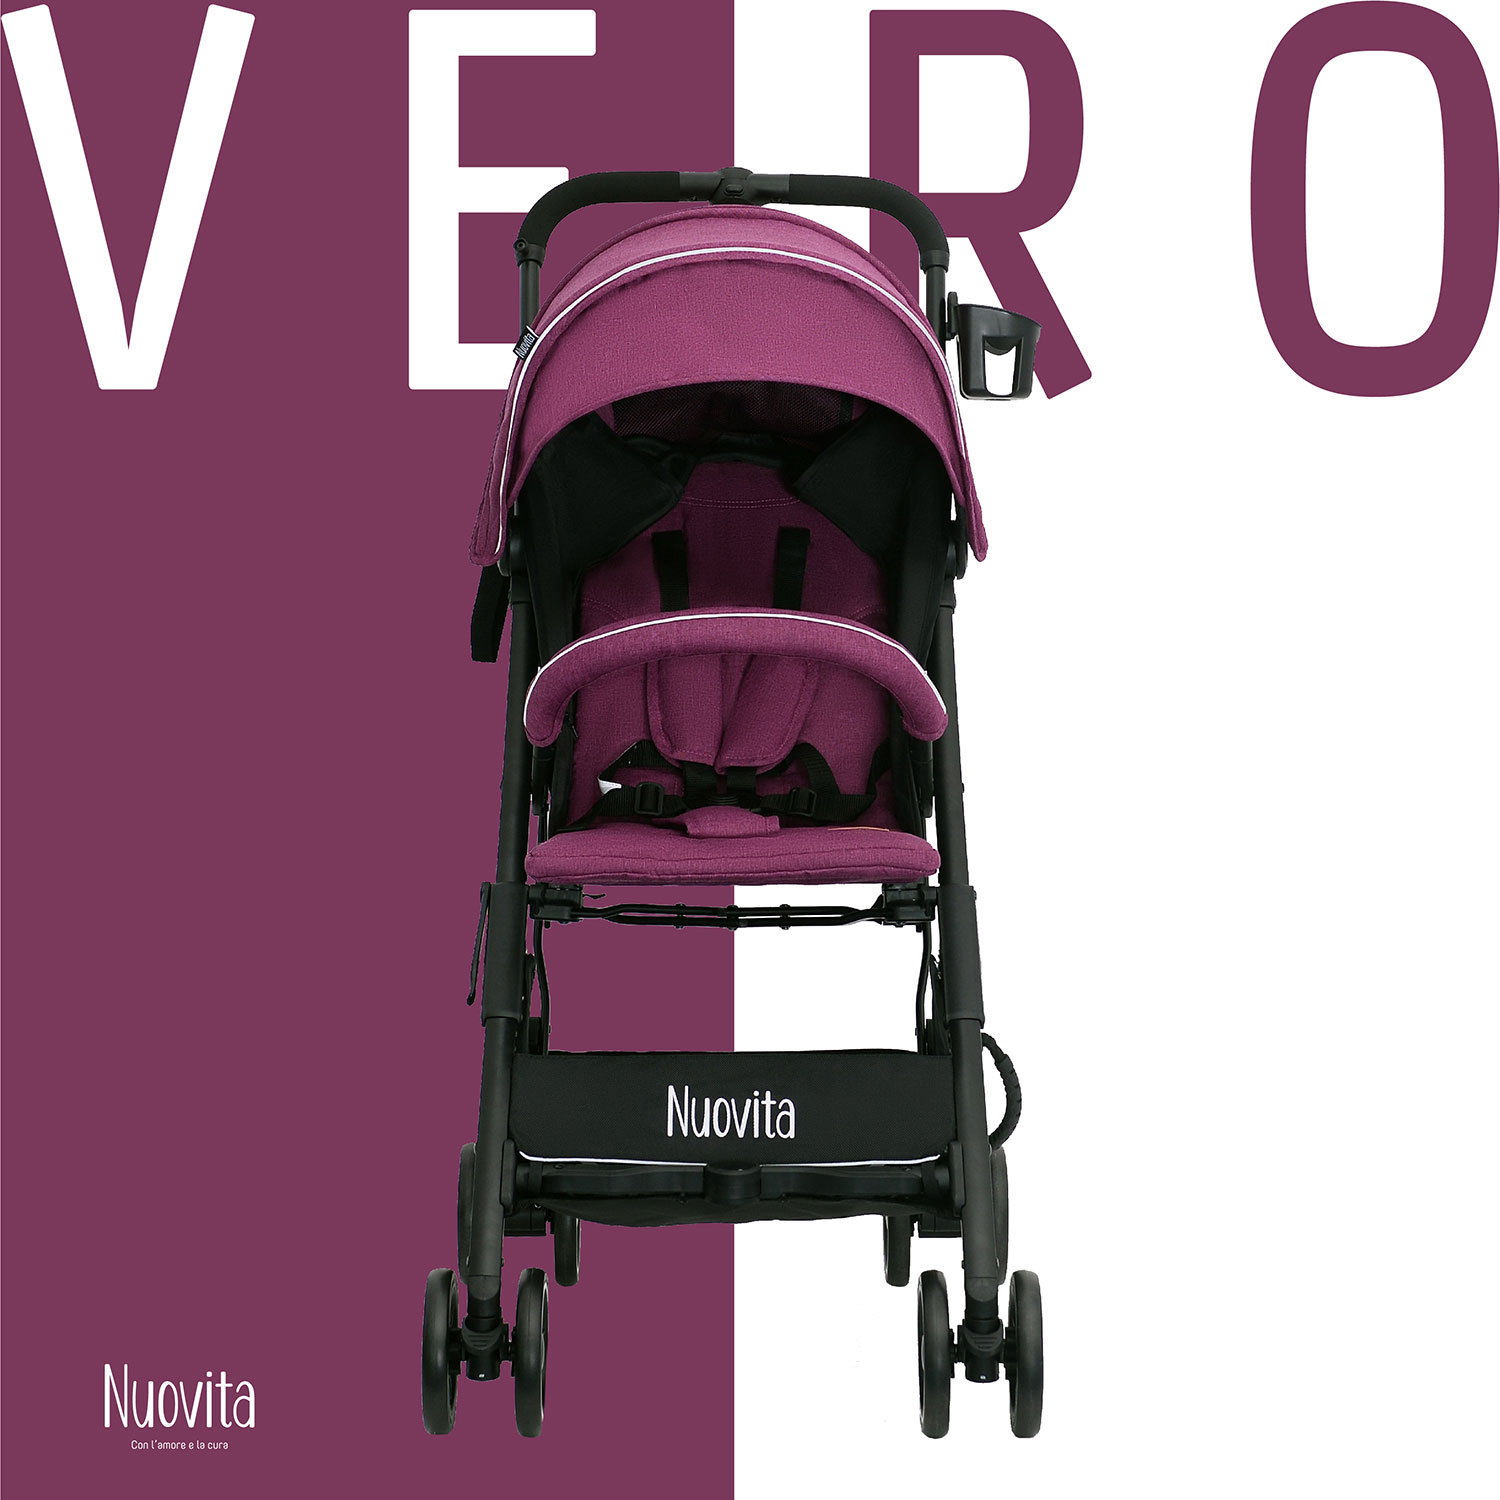 Прогулочная коляска Nuovita Vero Viola Фиолетовый прогулочная коляска nuovita vero arancio оранжевый